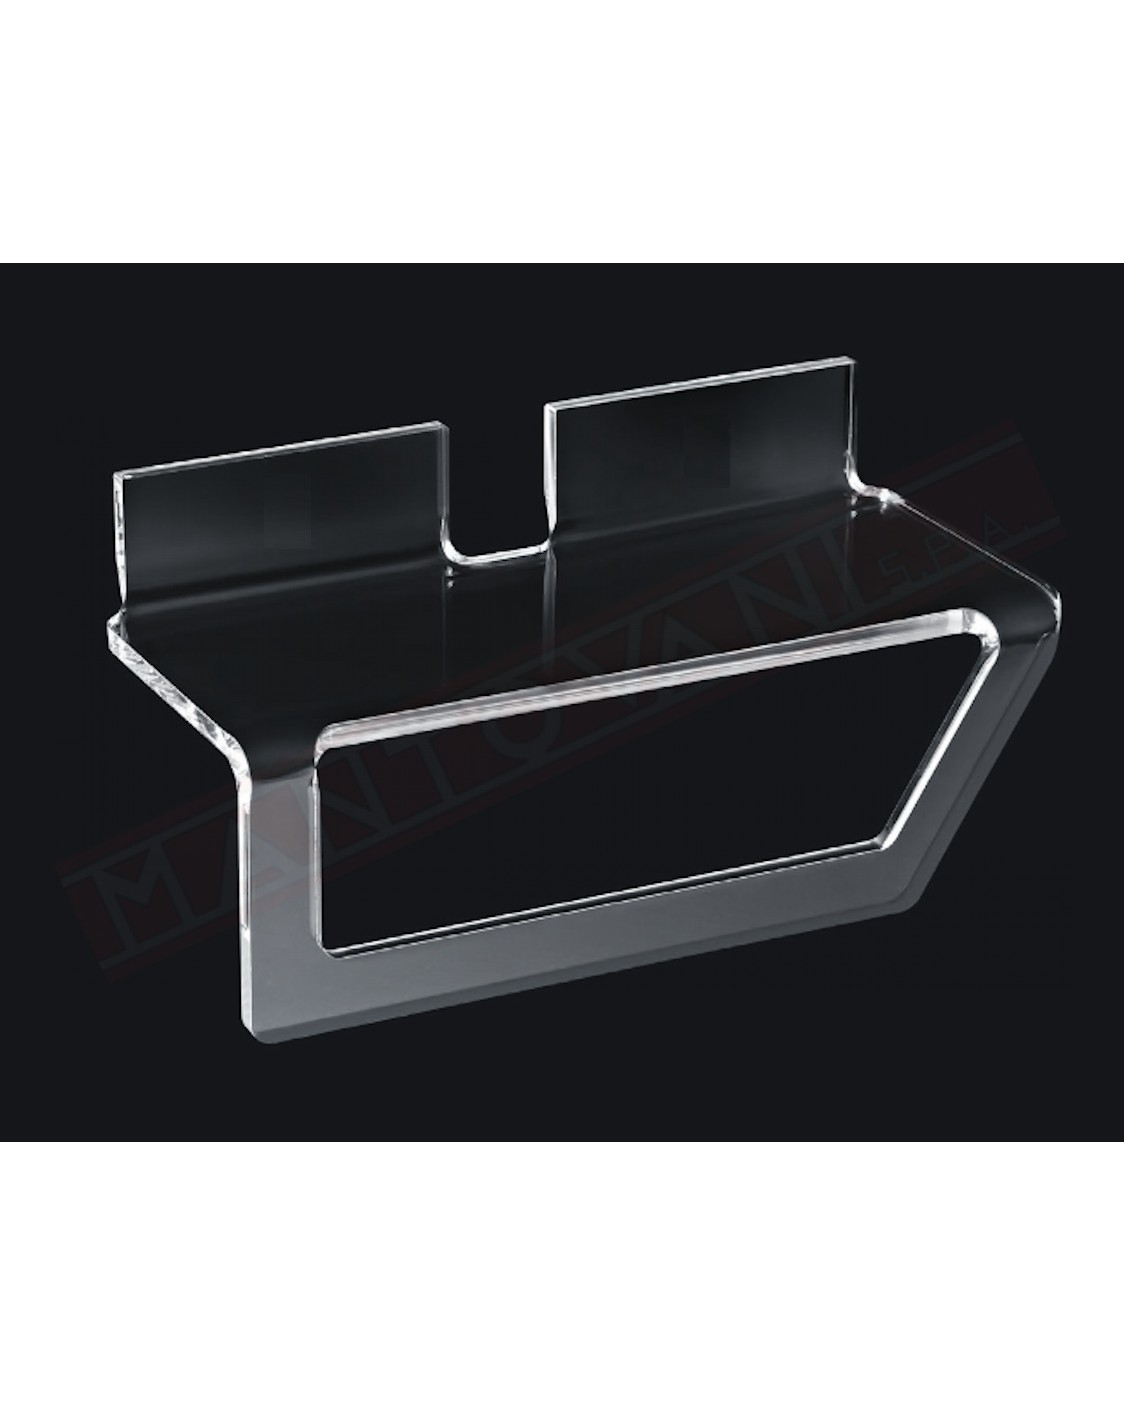 Tl.bath Flesso plexyglassl portasalviette e mensola fissaggio con adesivo 300x128x131 mm in plexyglass